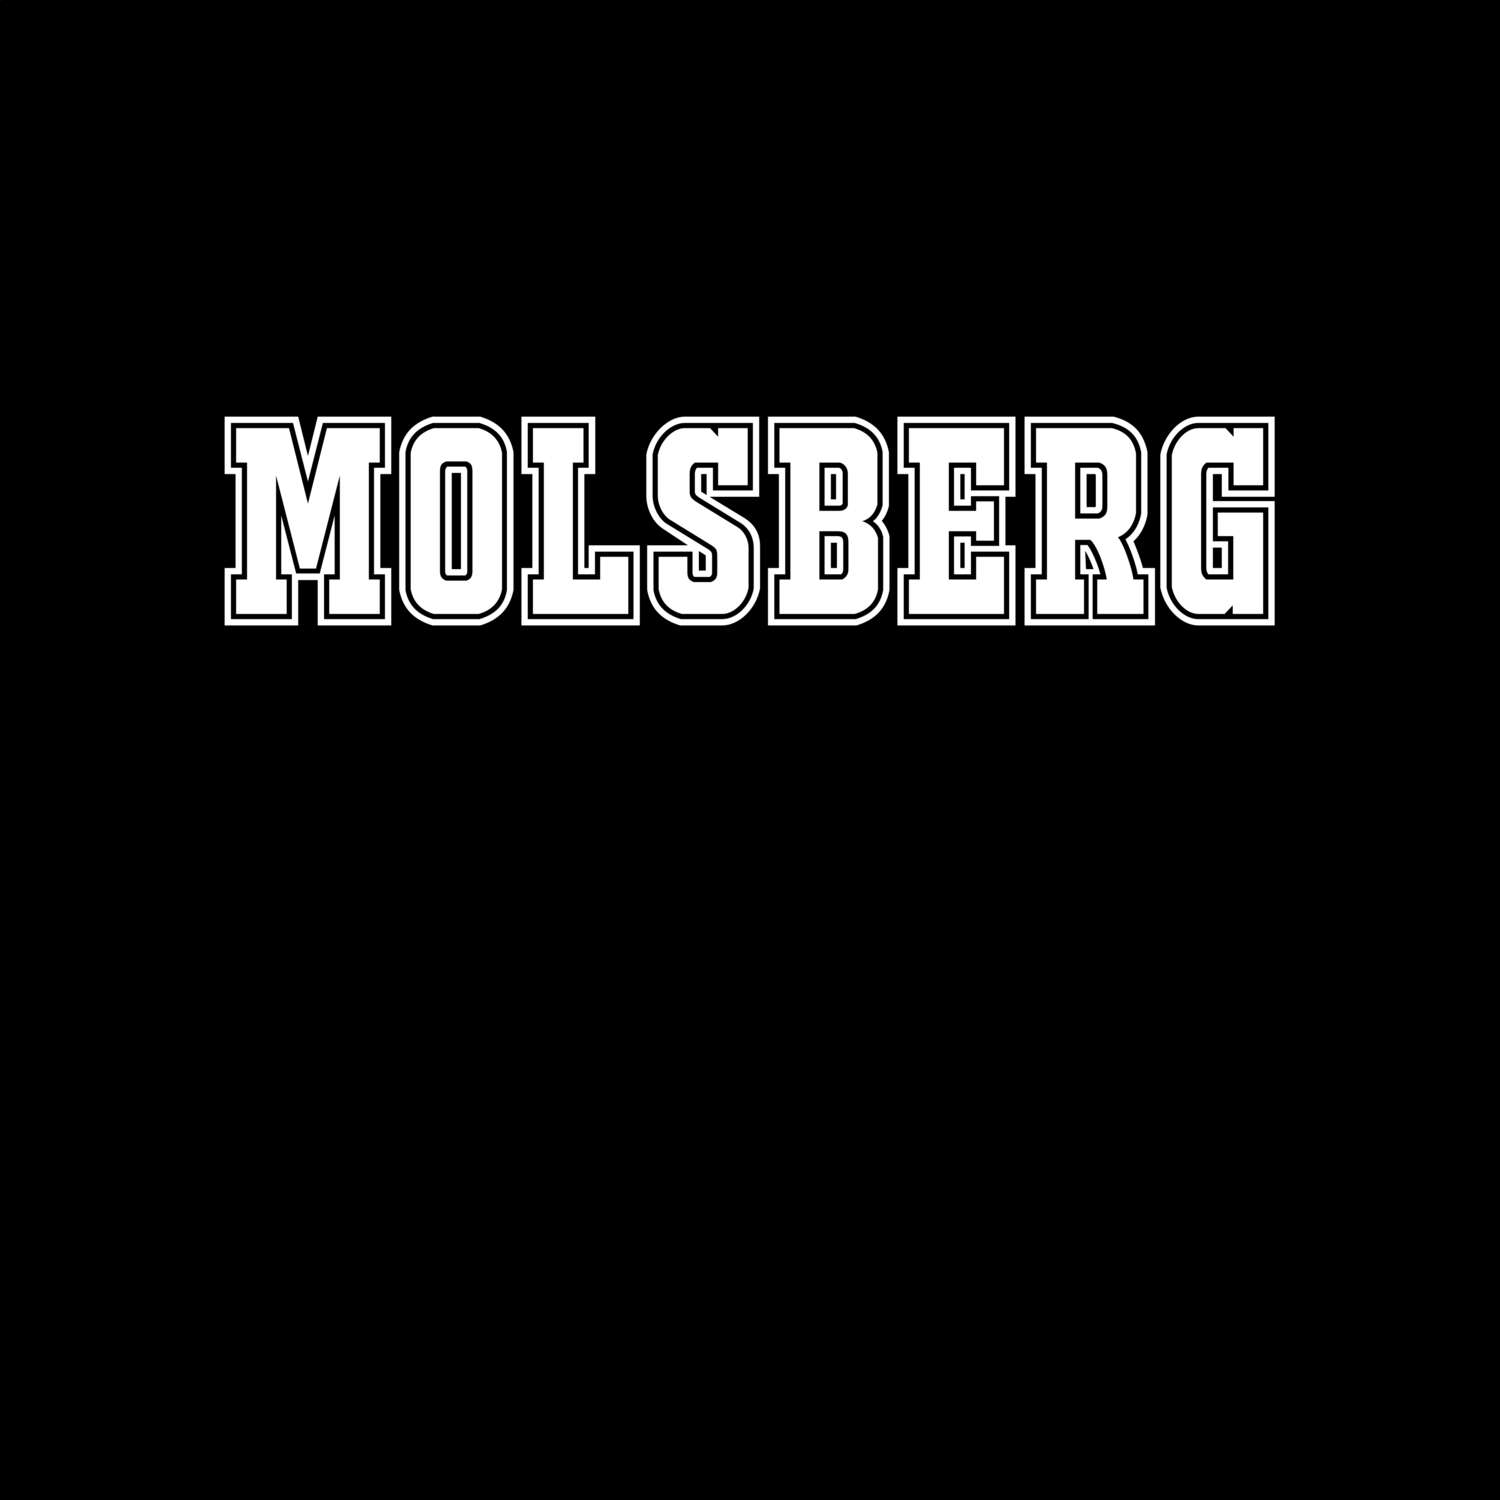 Molsberg T-Shirt »Classic«